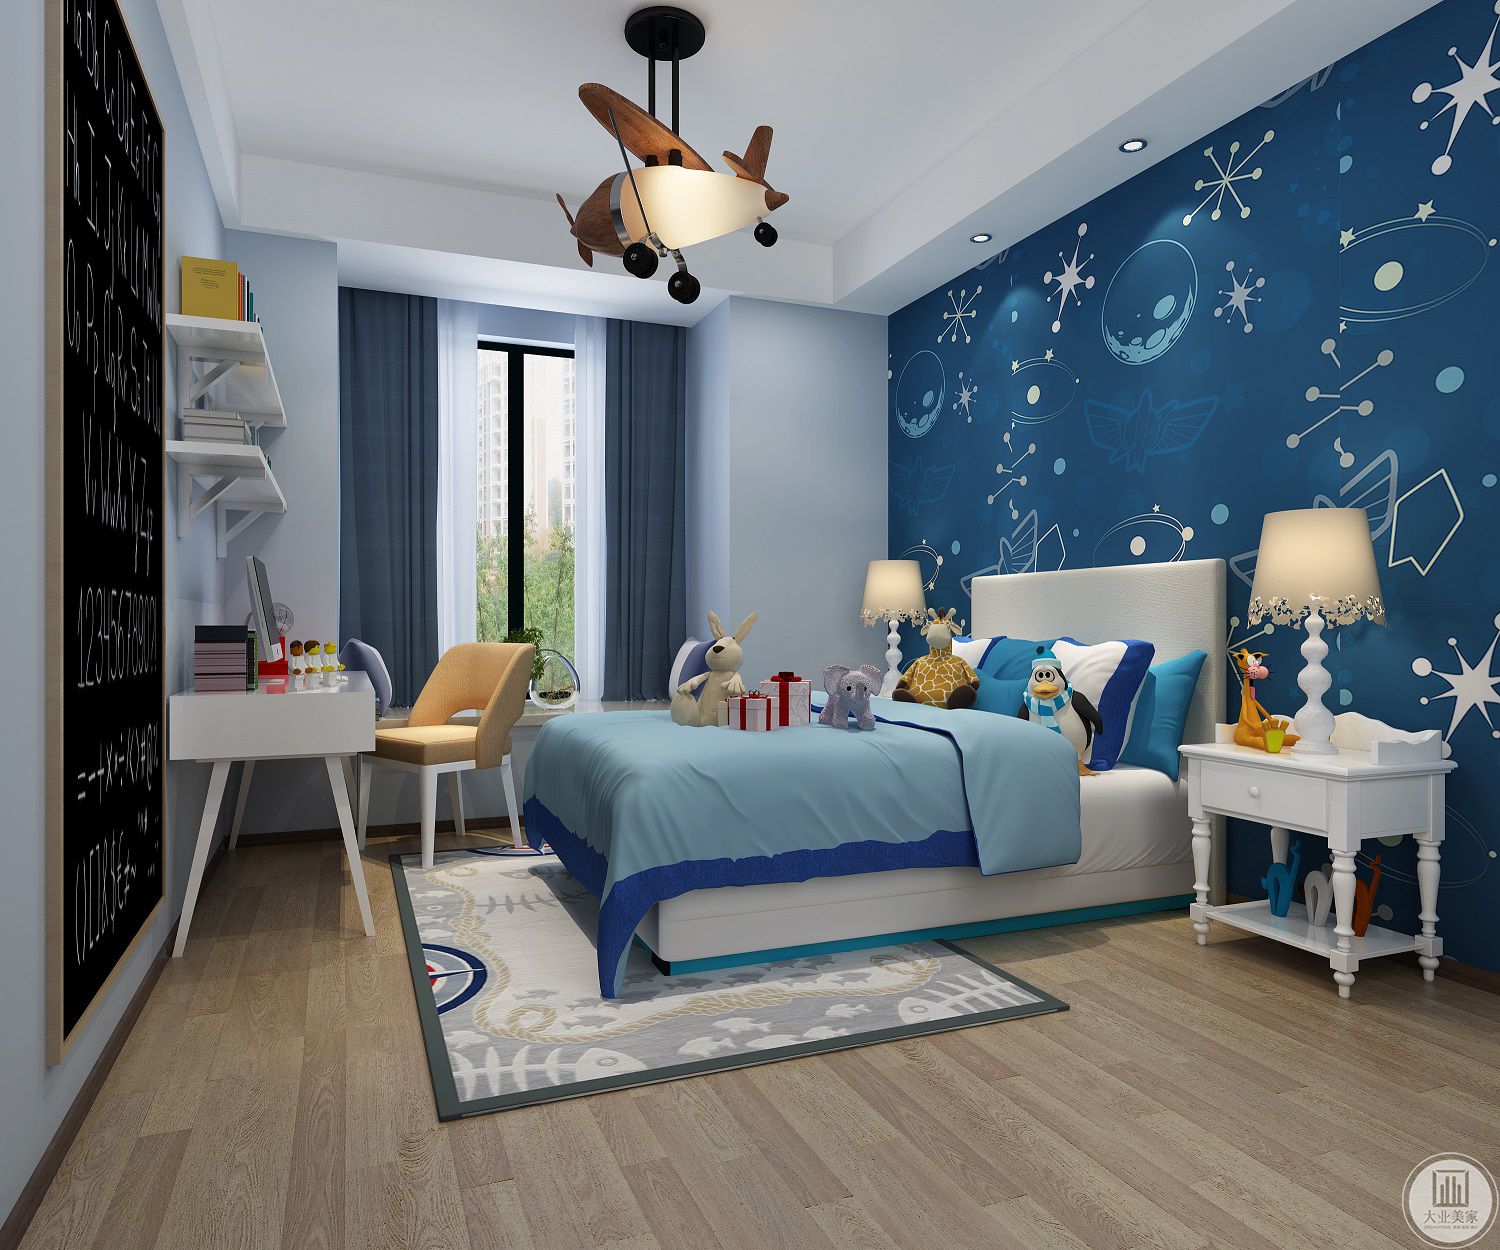 次卧是一个儿童房，功能性和收纳性都很强。主色调采用了蓝色，舒适活泼。